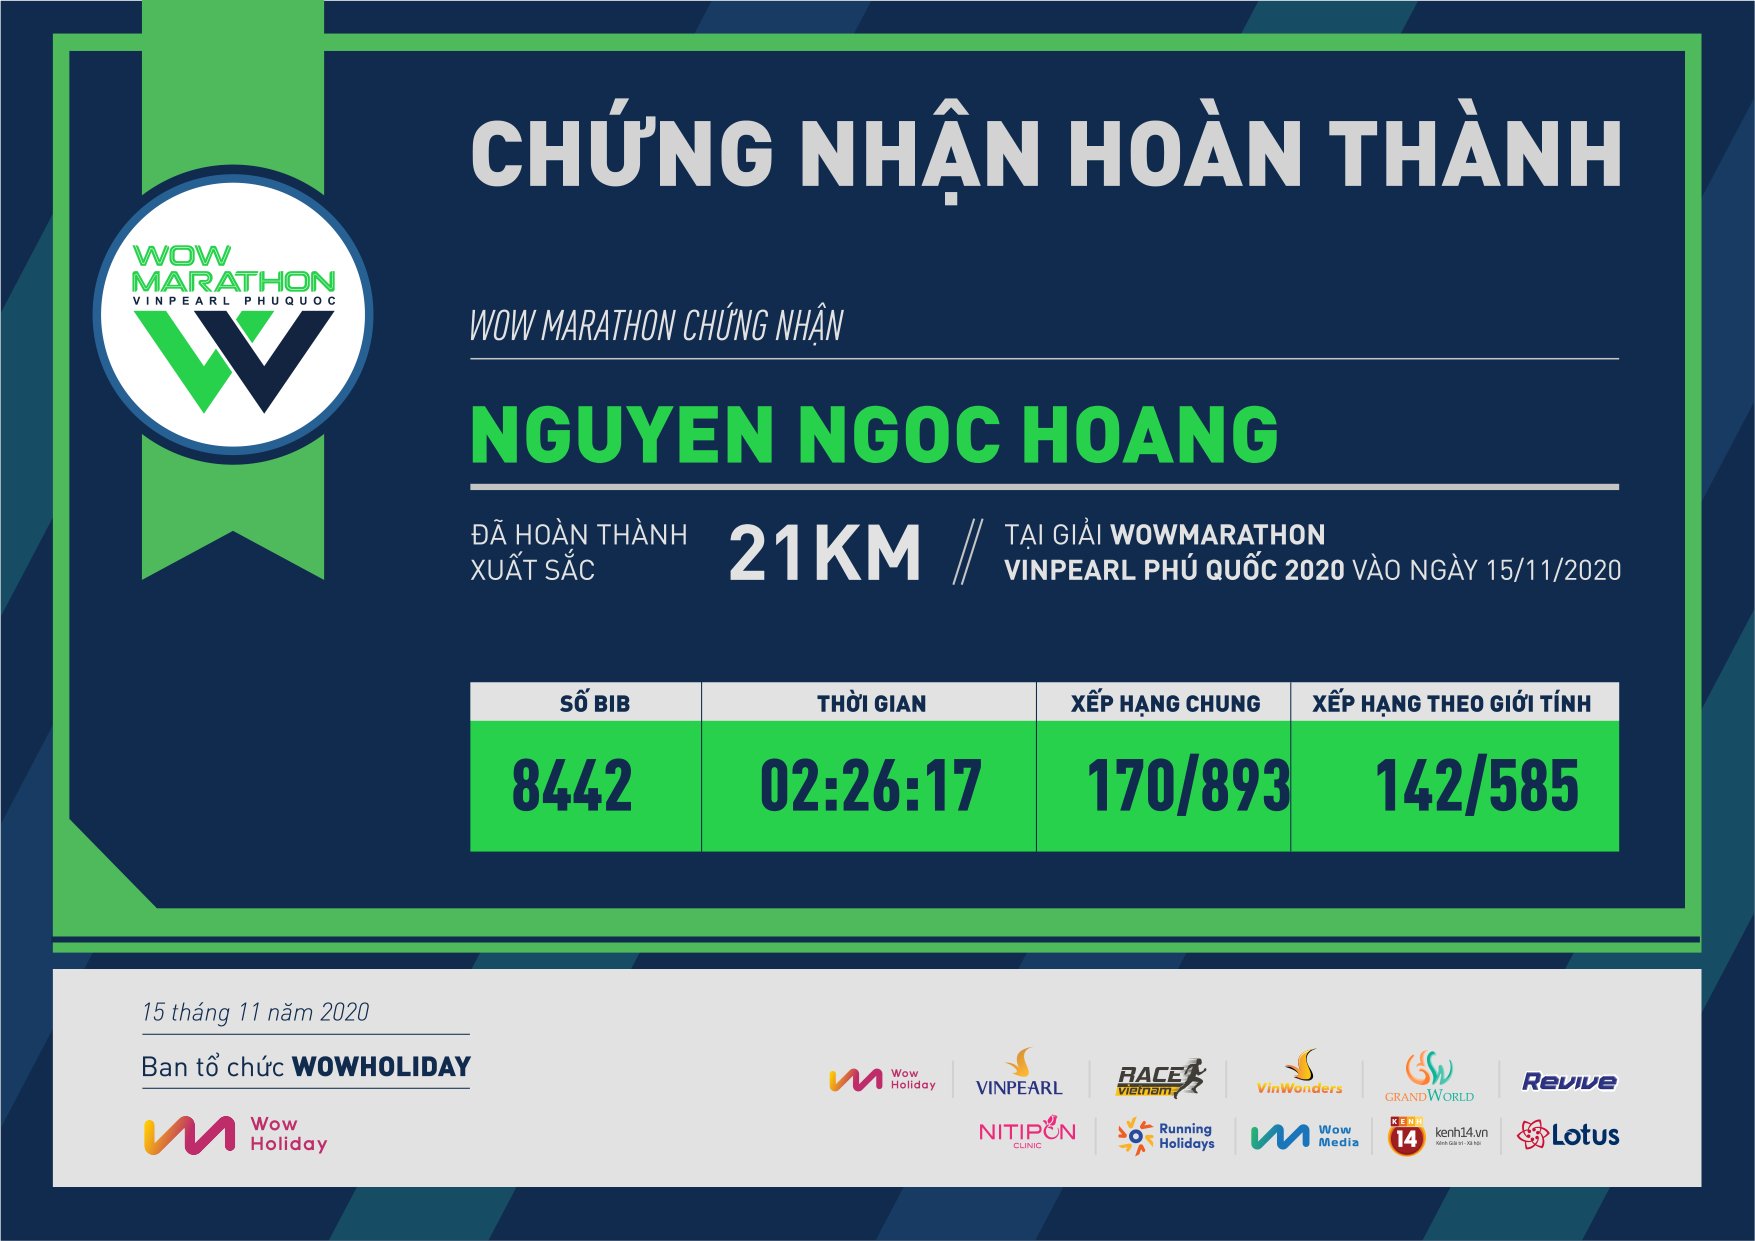 8442 - Nguyen Ngoc Hoang